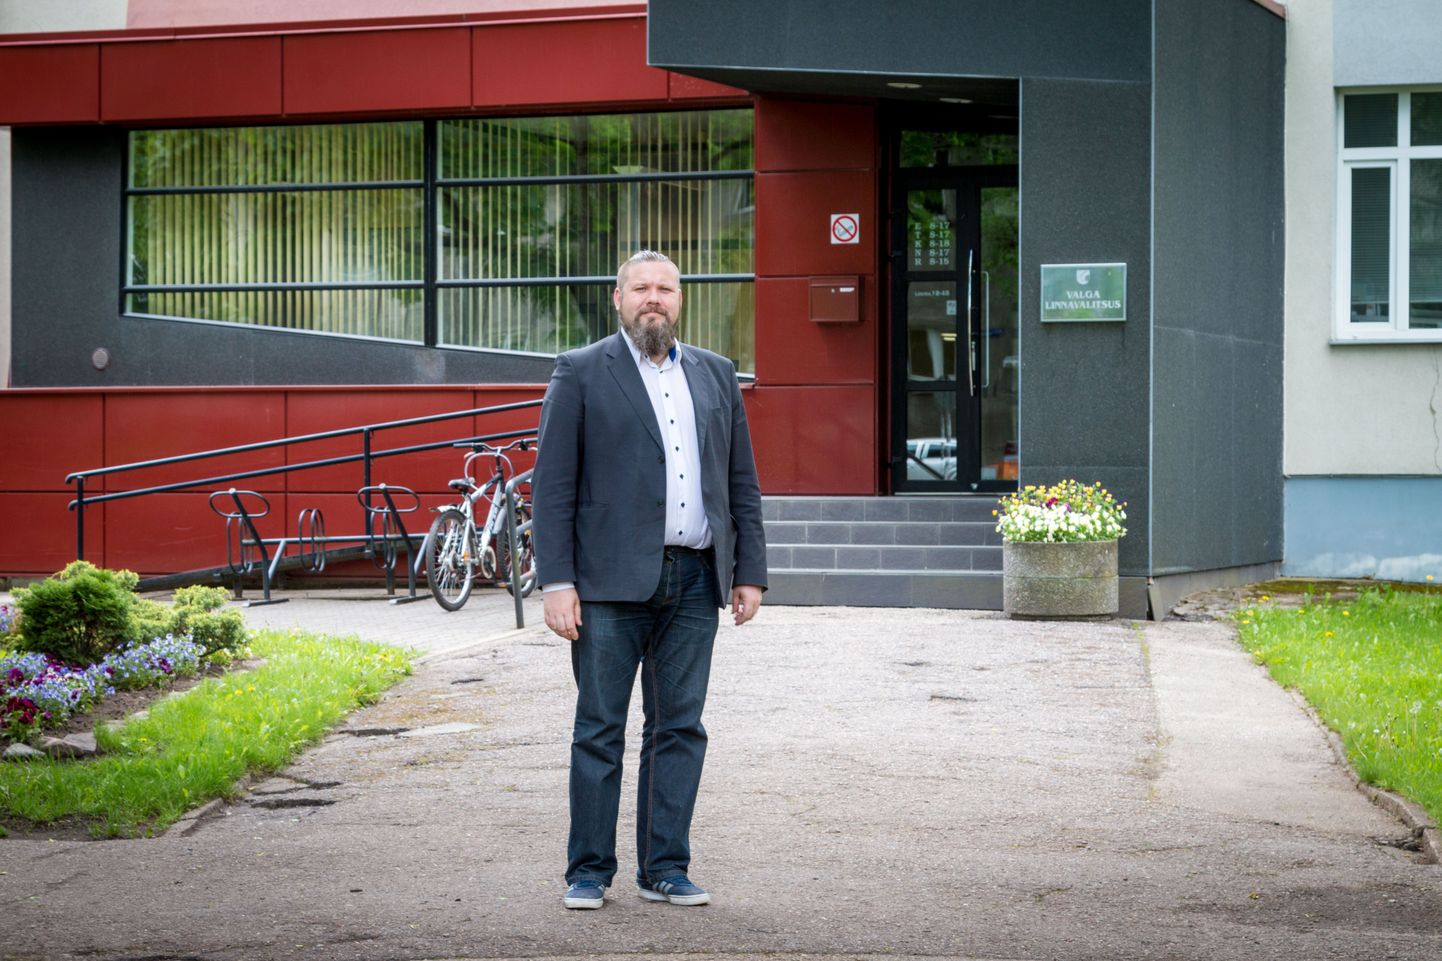 Üle kuu aja Valga linnavalitsuse ettevõtlus- ja arenguspetsialisti ametikohuseid täitva Daniel Kullamä esmamuljed ametist, töökaaslastest ning Valga linnastki on head ning oma valikuga on ta väga rahul.